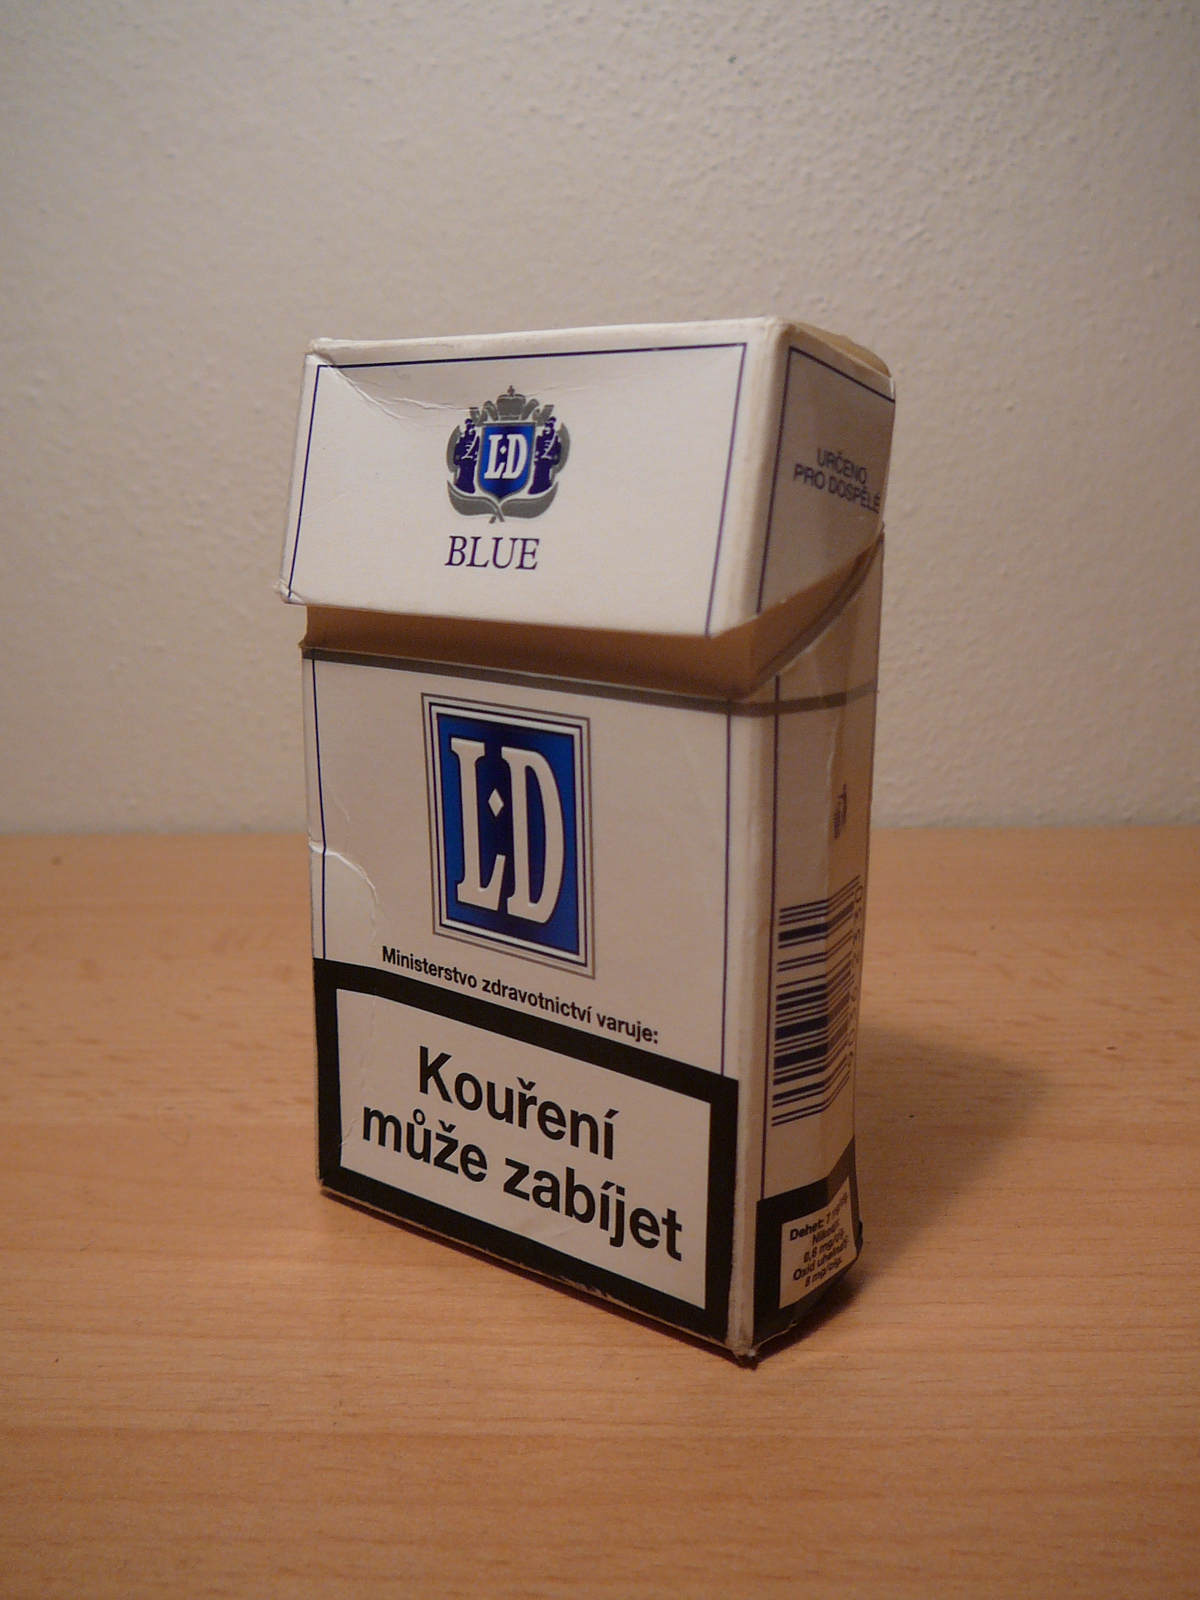 file-cigarette-ld-2-jpg-wikimedia-commons